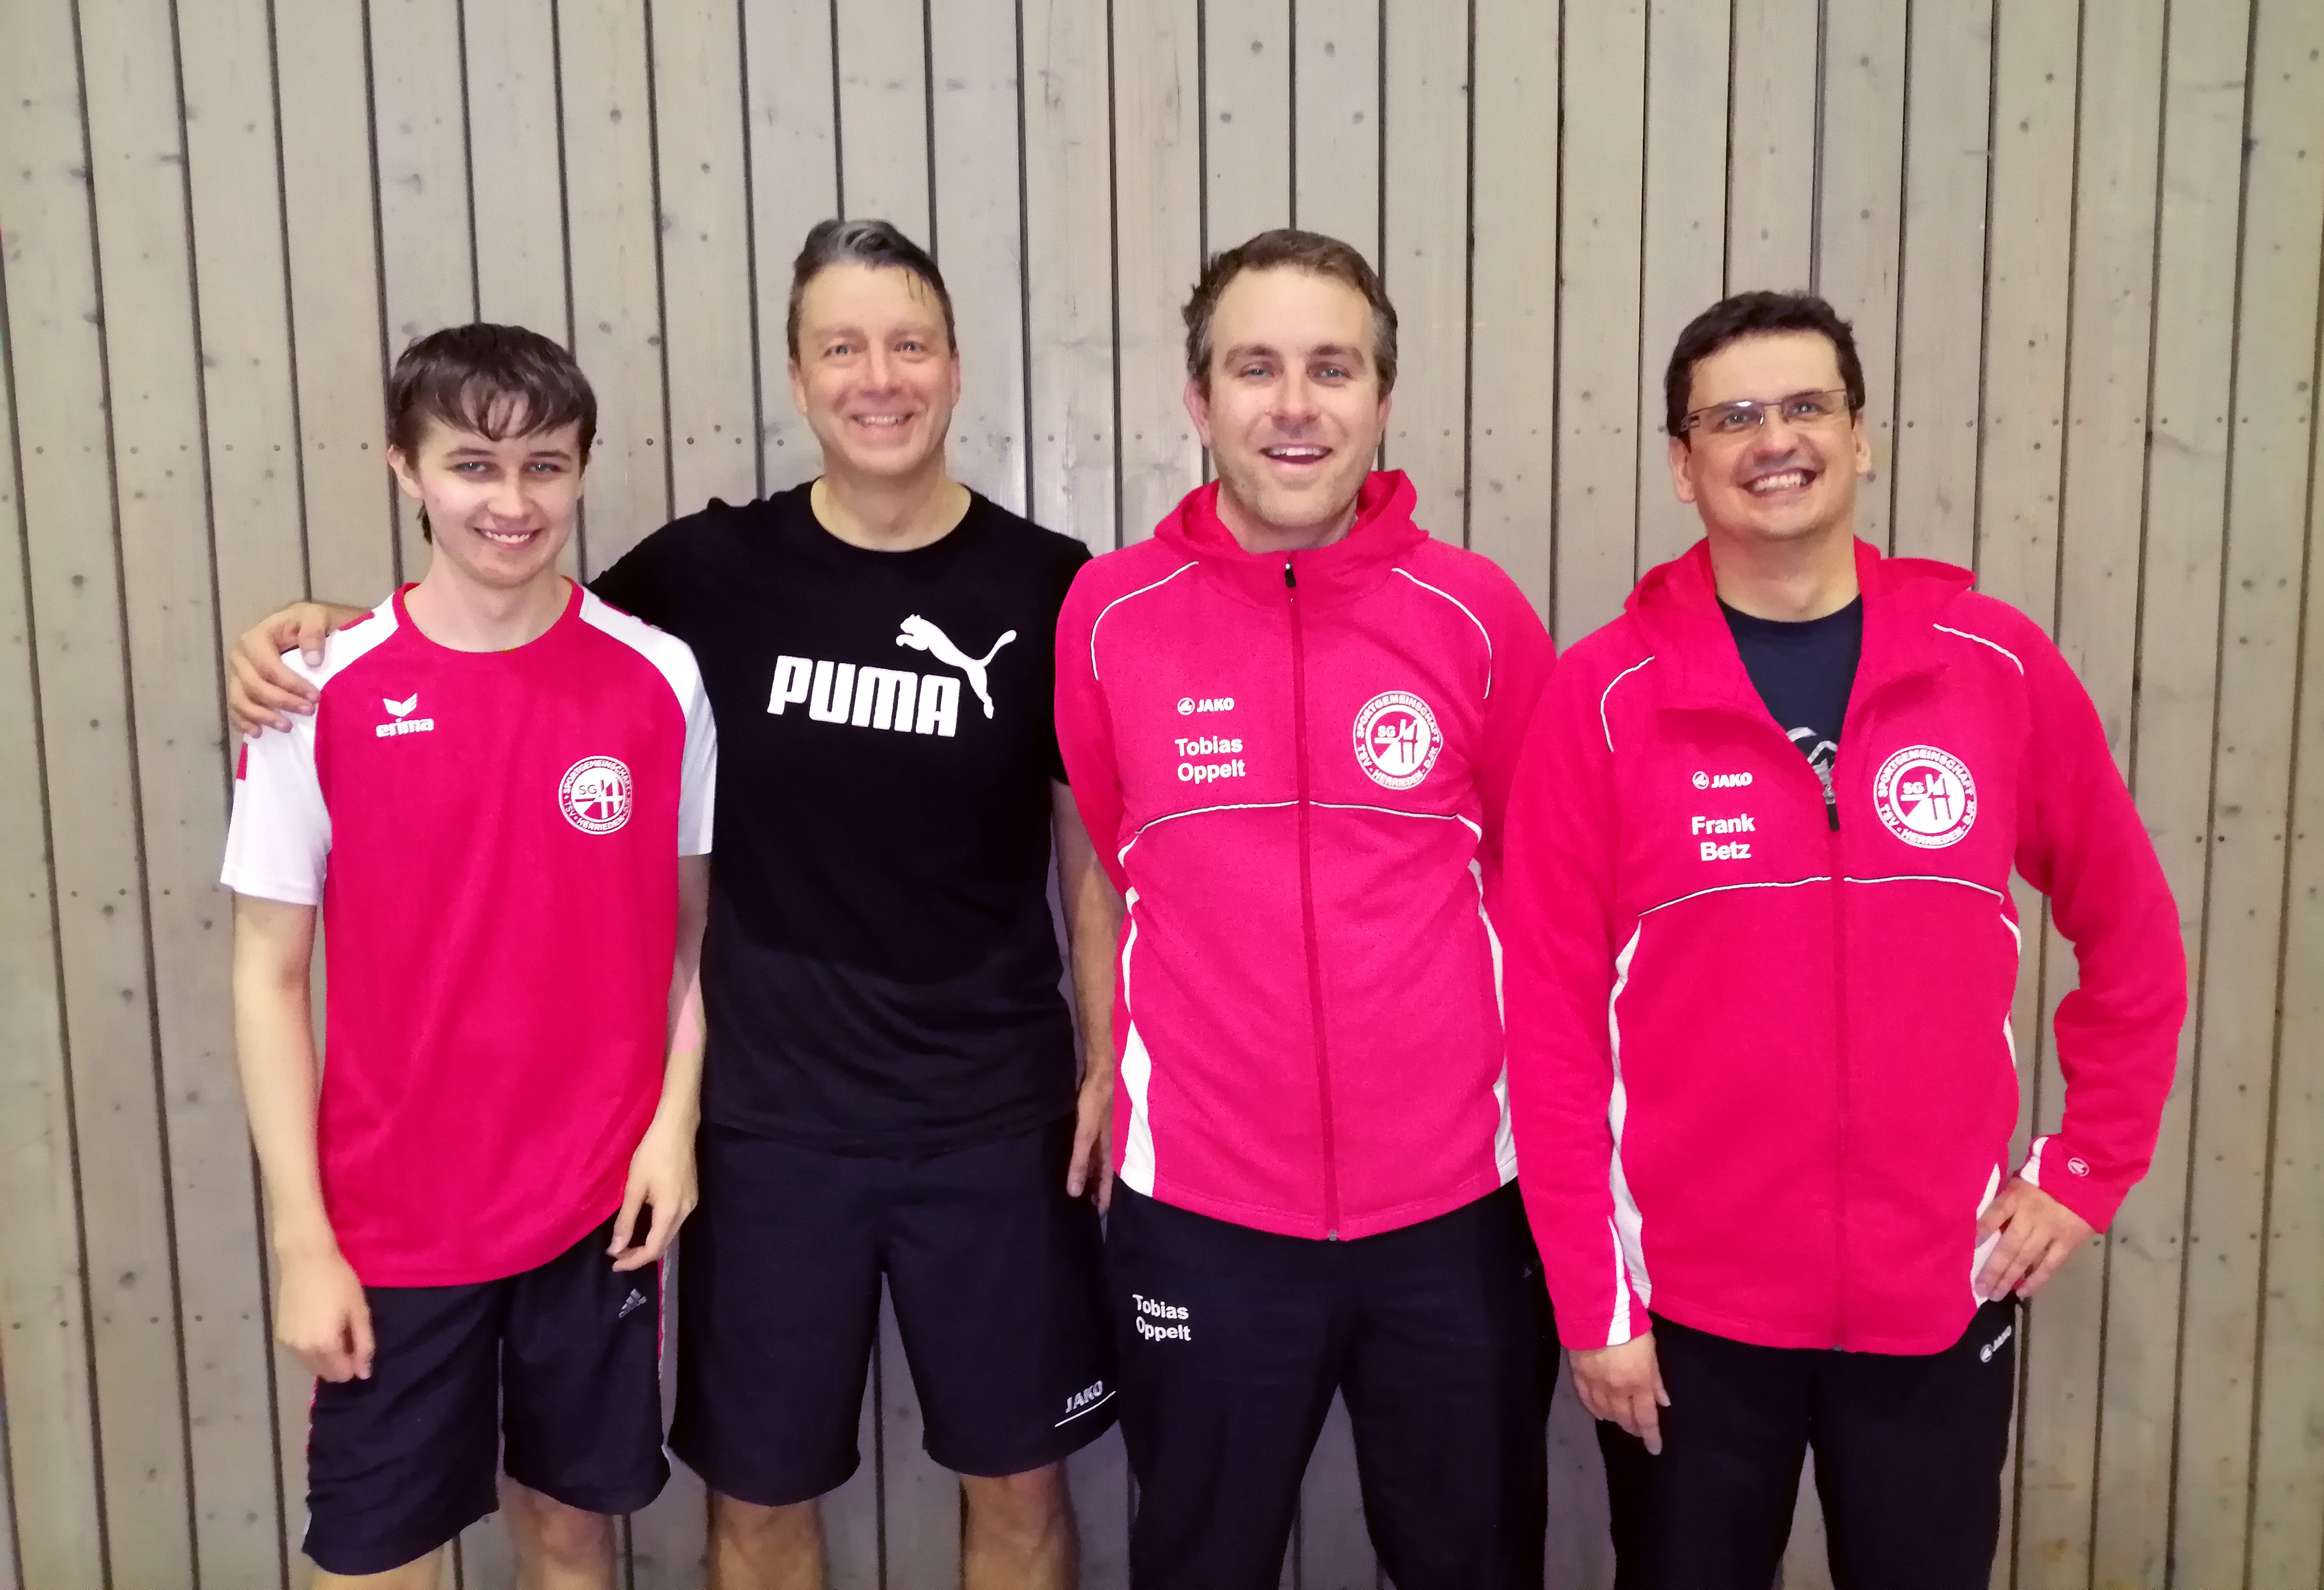  Die Finalisten der Herrieder Tischtennis-Vereinsmeisterschaften (von links): Jan Garreis, Michael Heller, Tobias Oppelt und Frank Betz.